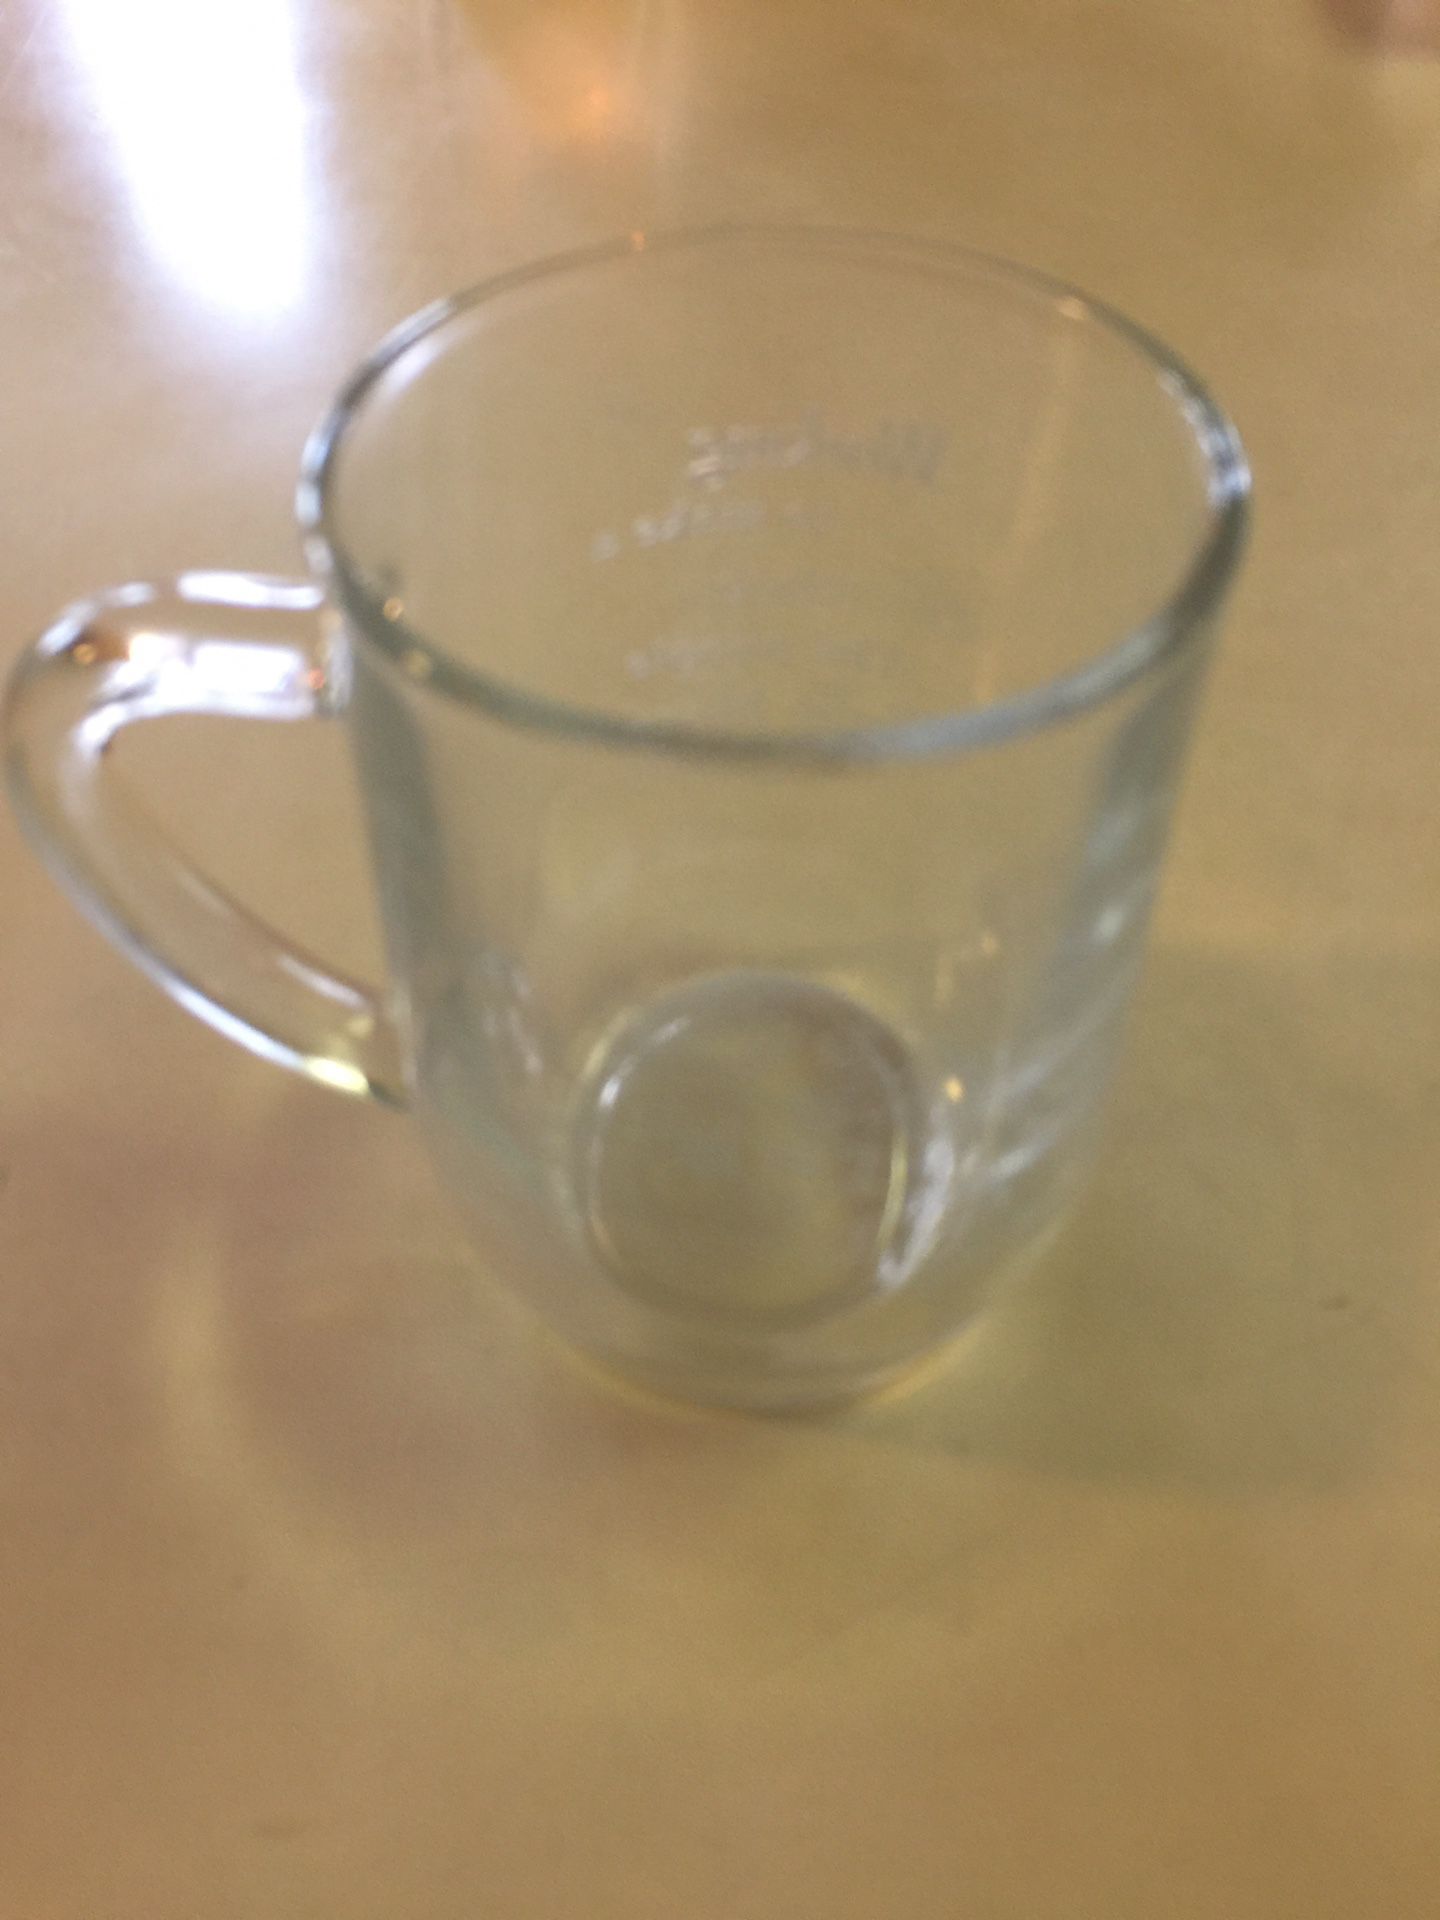 Philip Morris Collectible glass mug